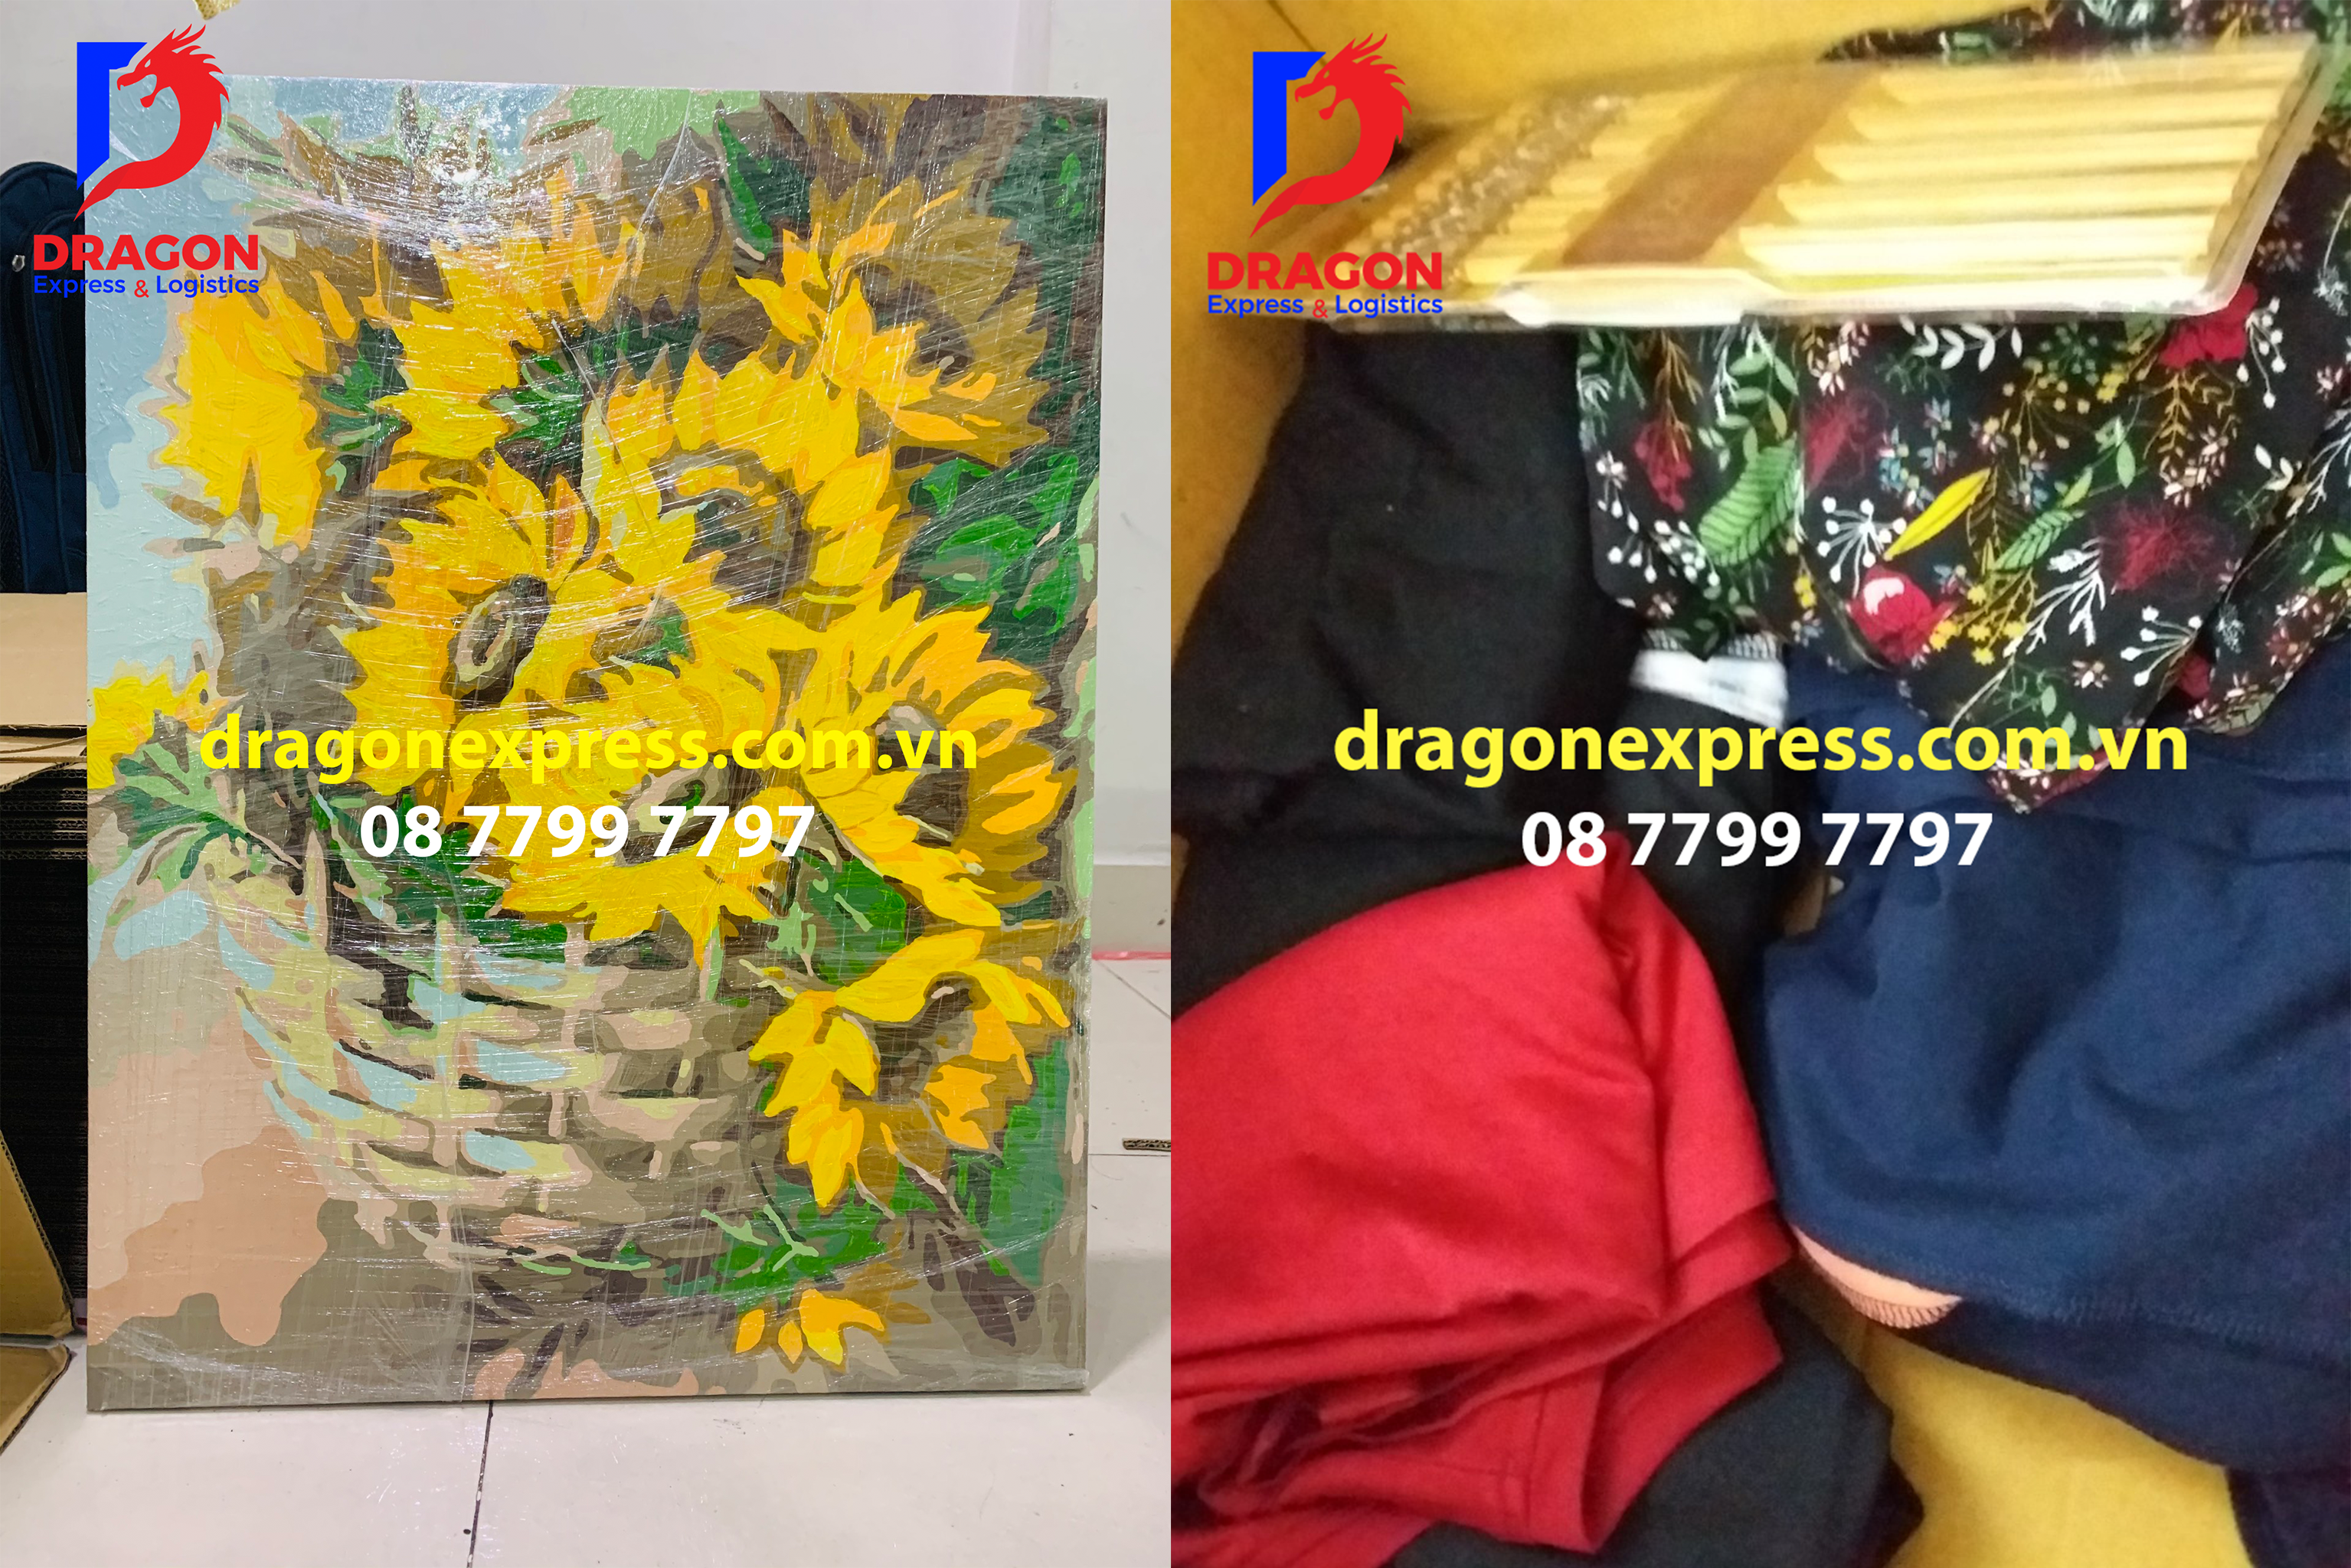 Dragon Express - gửi hàng tại quận 2 